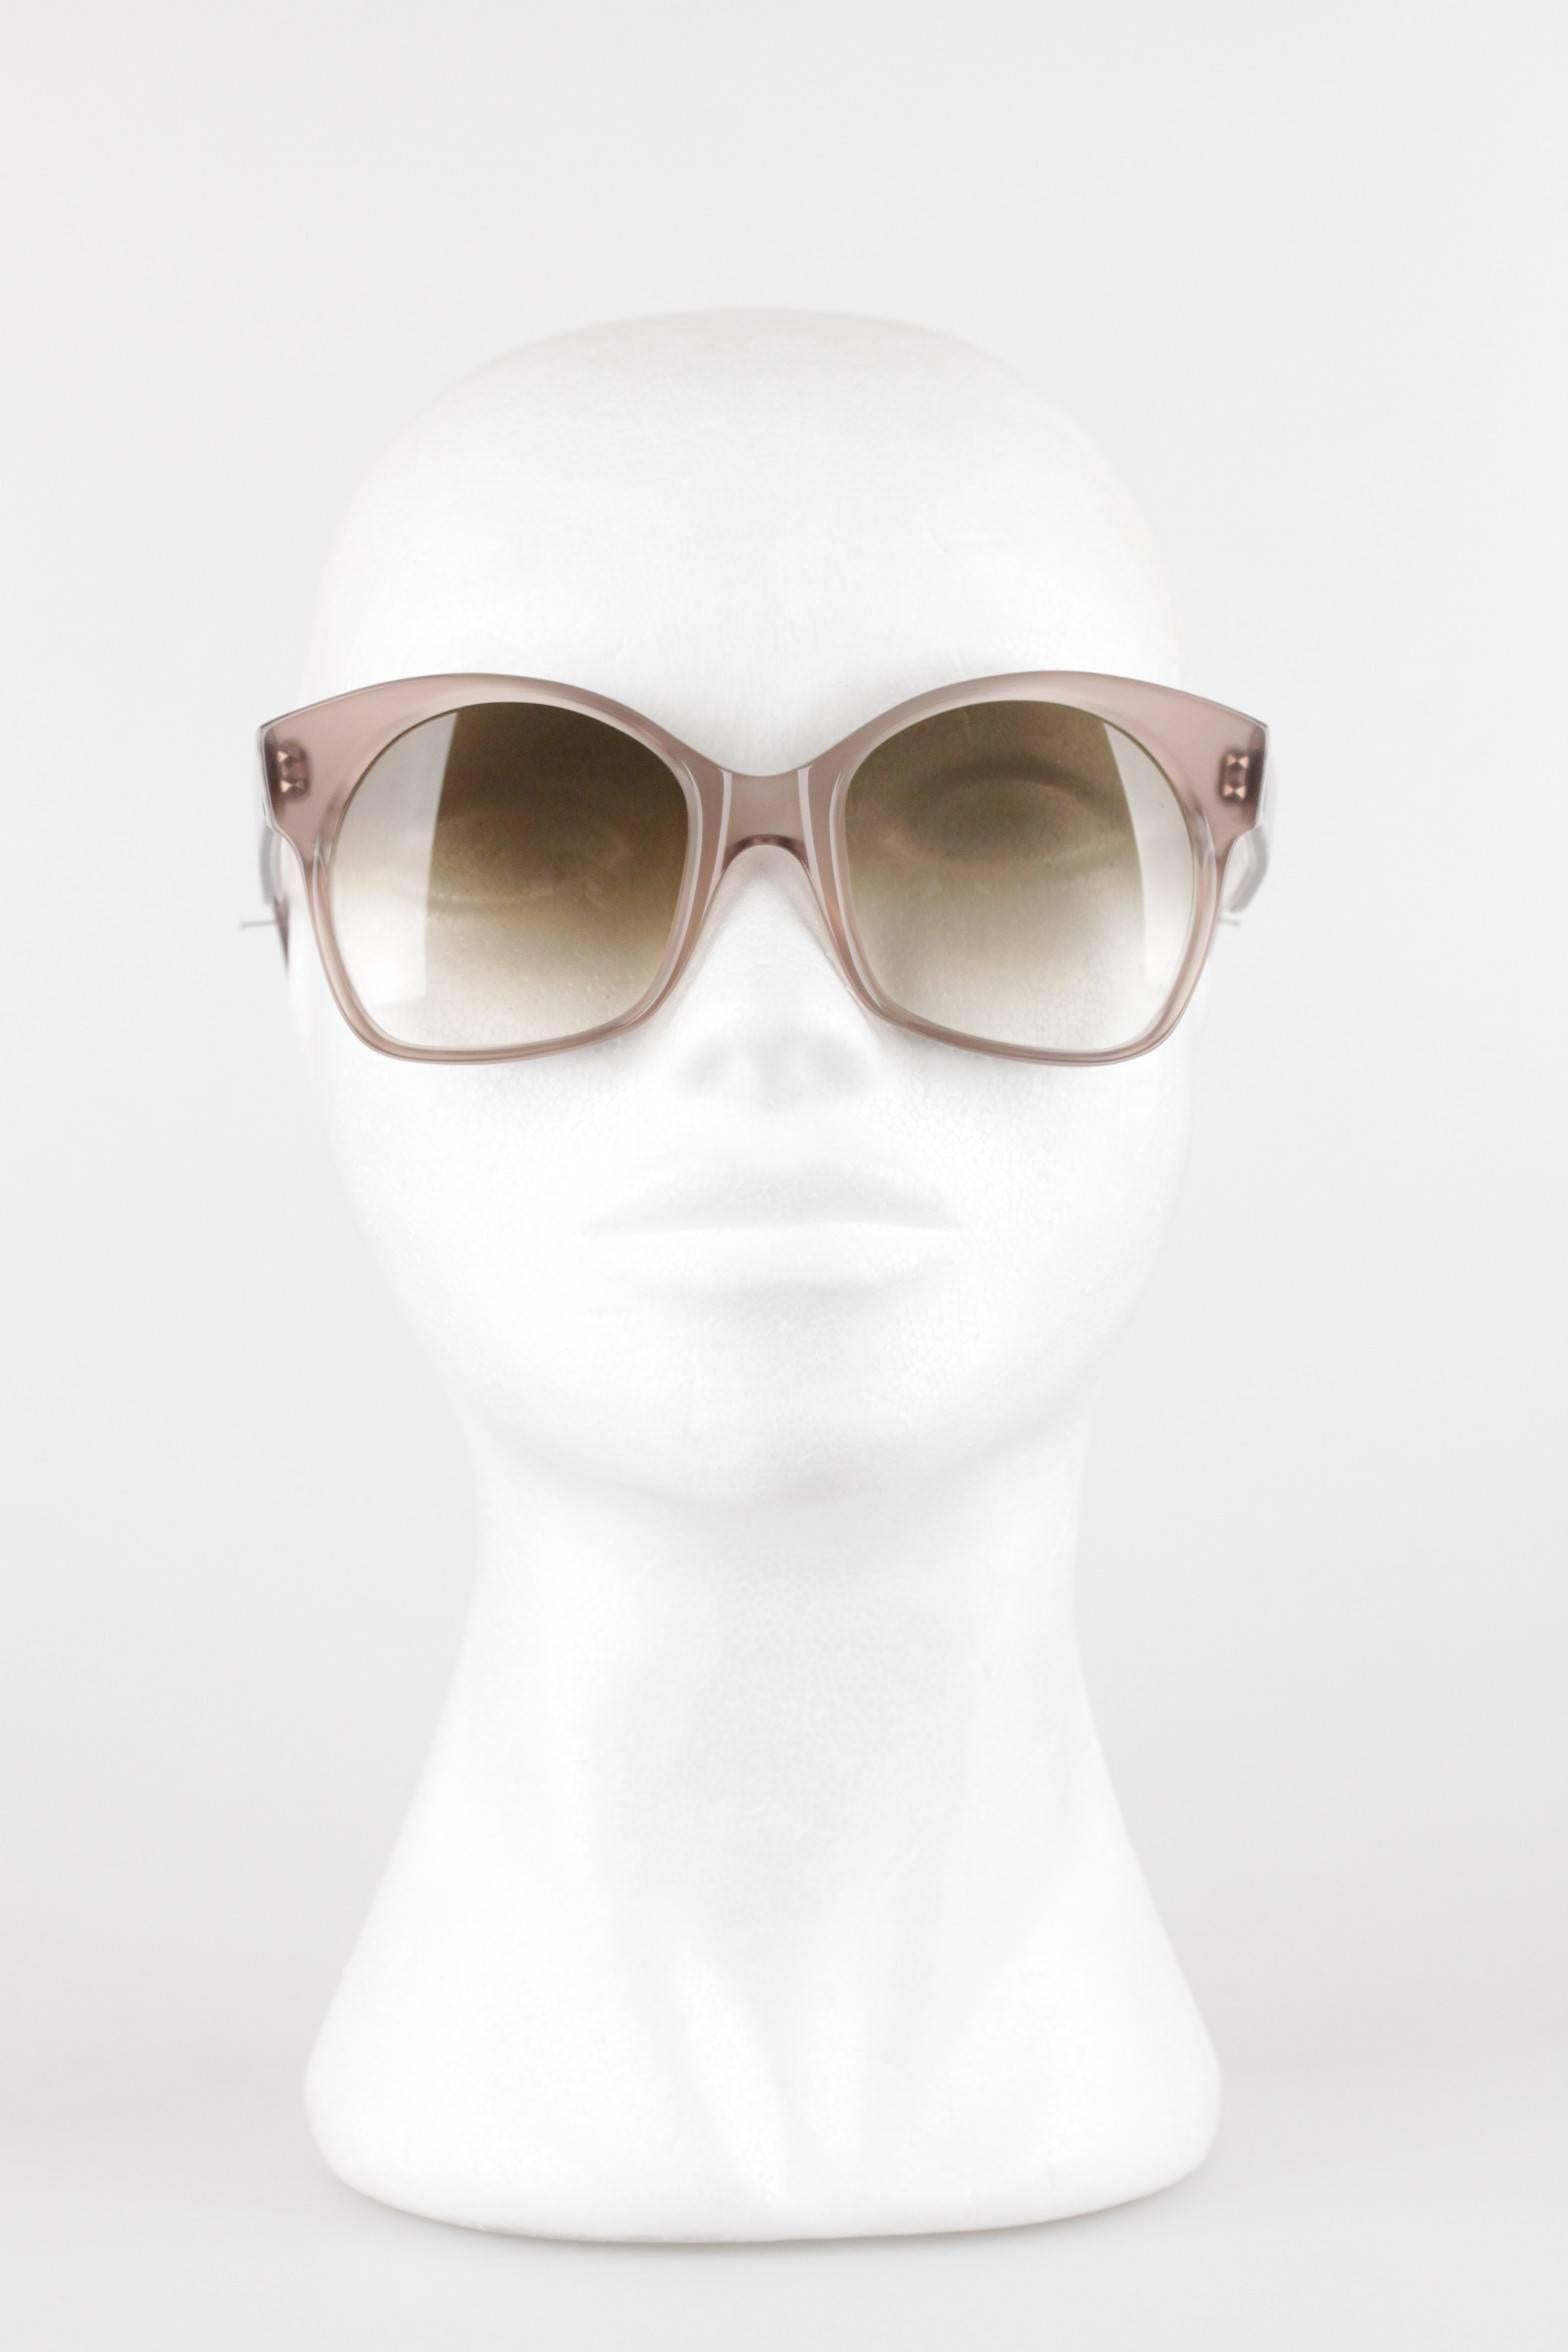 YVES SAINT LAURENT Vintage MINT RARE Large Gray Sunglasses AGRIAS 52/22 2